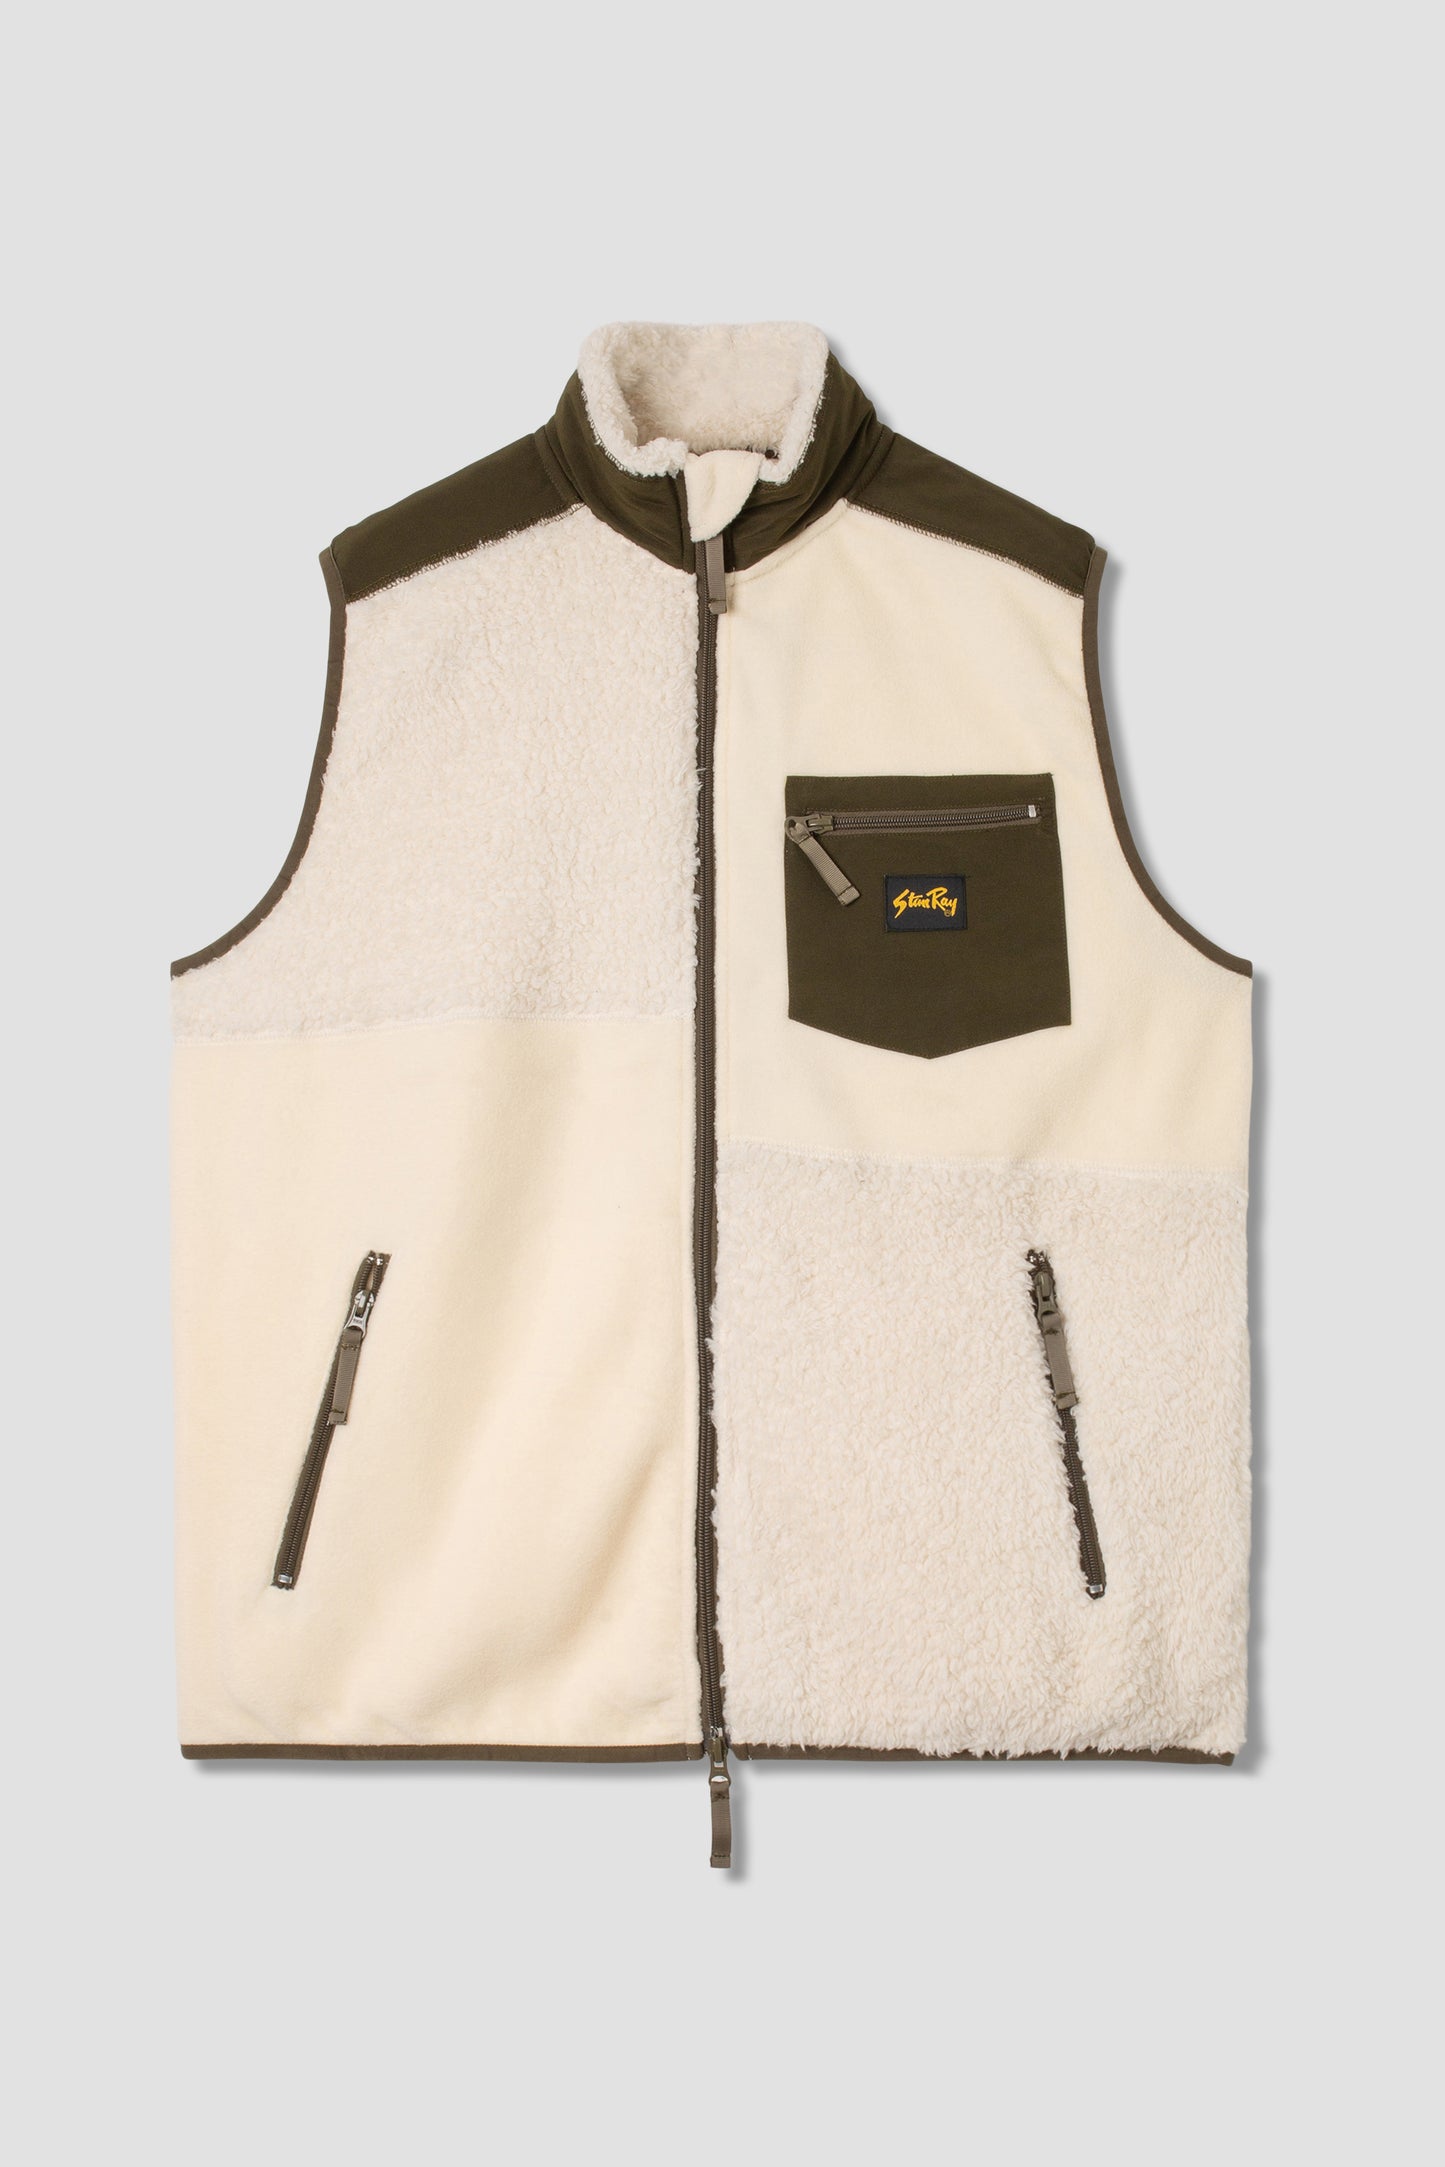 Patchwork Fleece Vest (Natural / Olive)